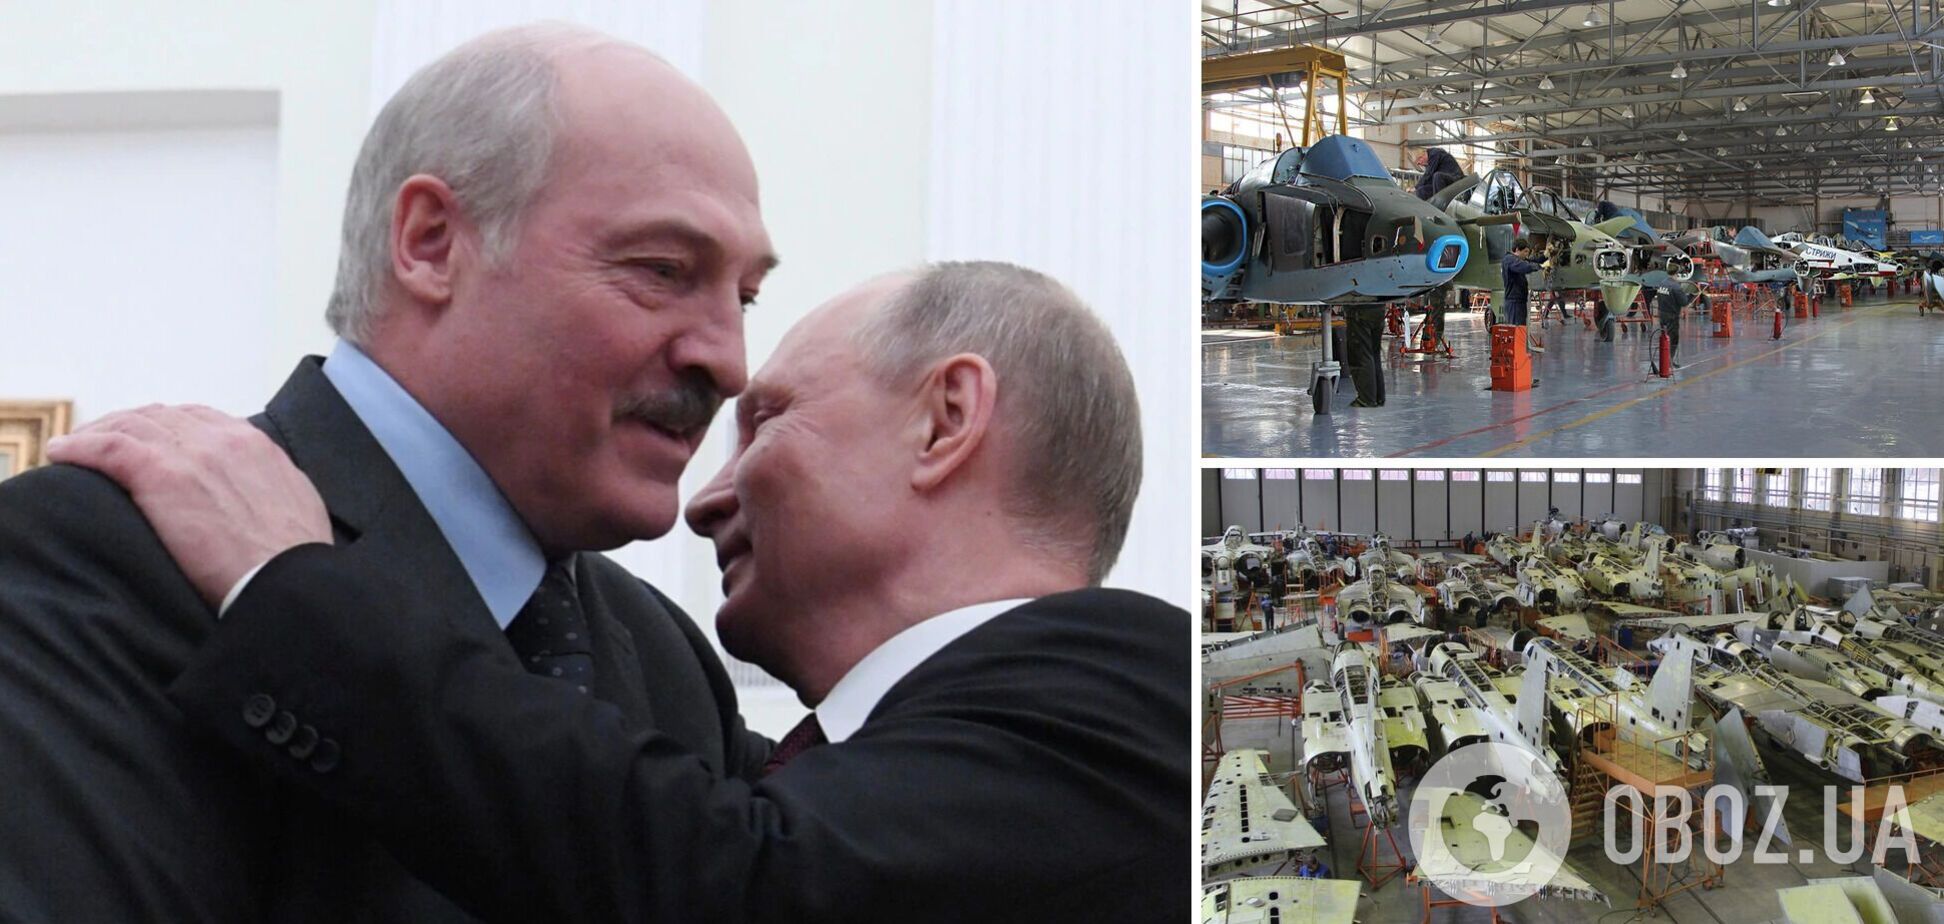 Россия хочет получить контроль над беларуским оборонпромом: стало известно, о чем говорил Шойгу во время визита в Минск